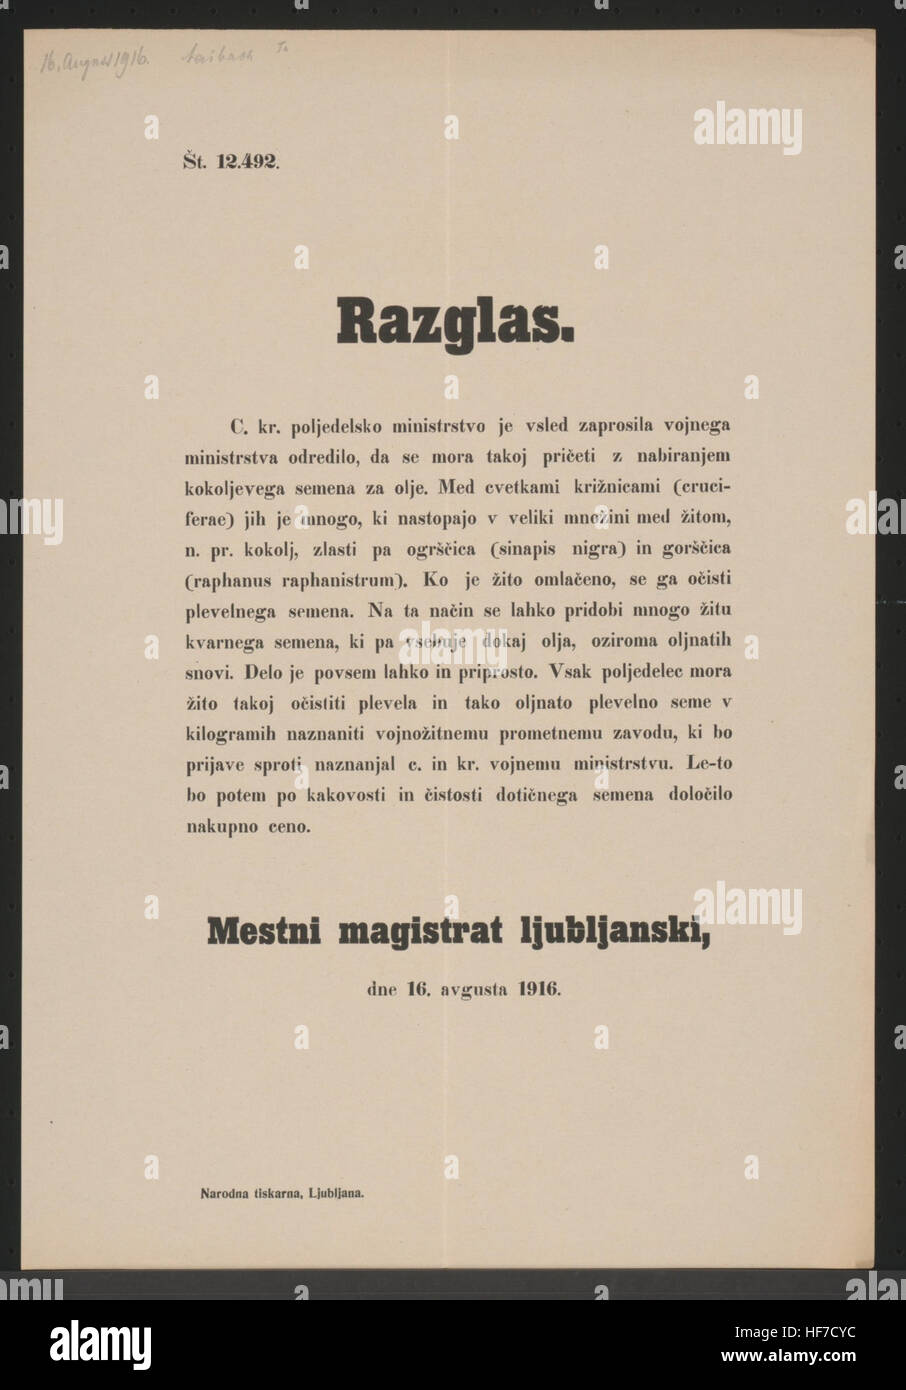 Bestimmungen bezüglich Reinheit und Qualität von Saatgut - Stadtmagistrat Laibach, am 16 August 1916 Saatgut - Kundmachung - Laibach - In slowenischer Sprache 1916 Stock Photo